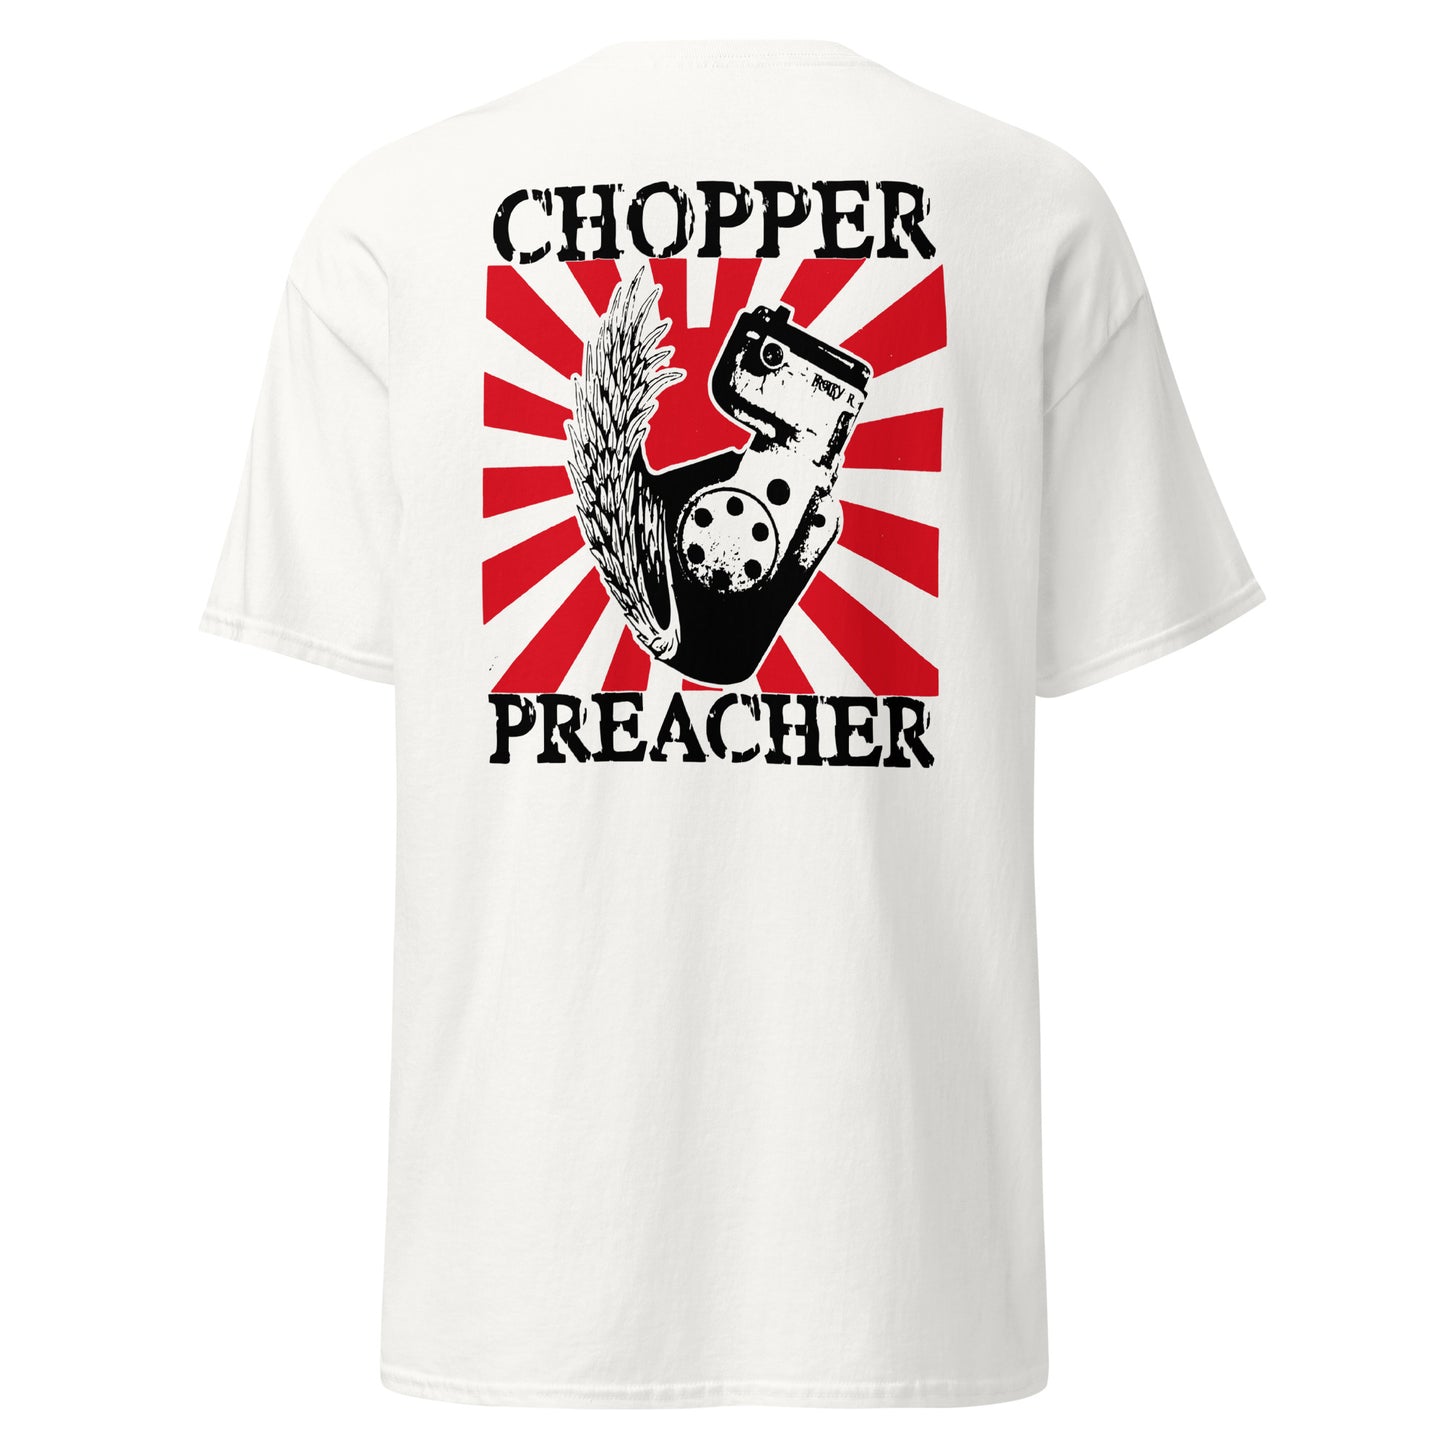 T-shirt "Chopper Preacher"